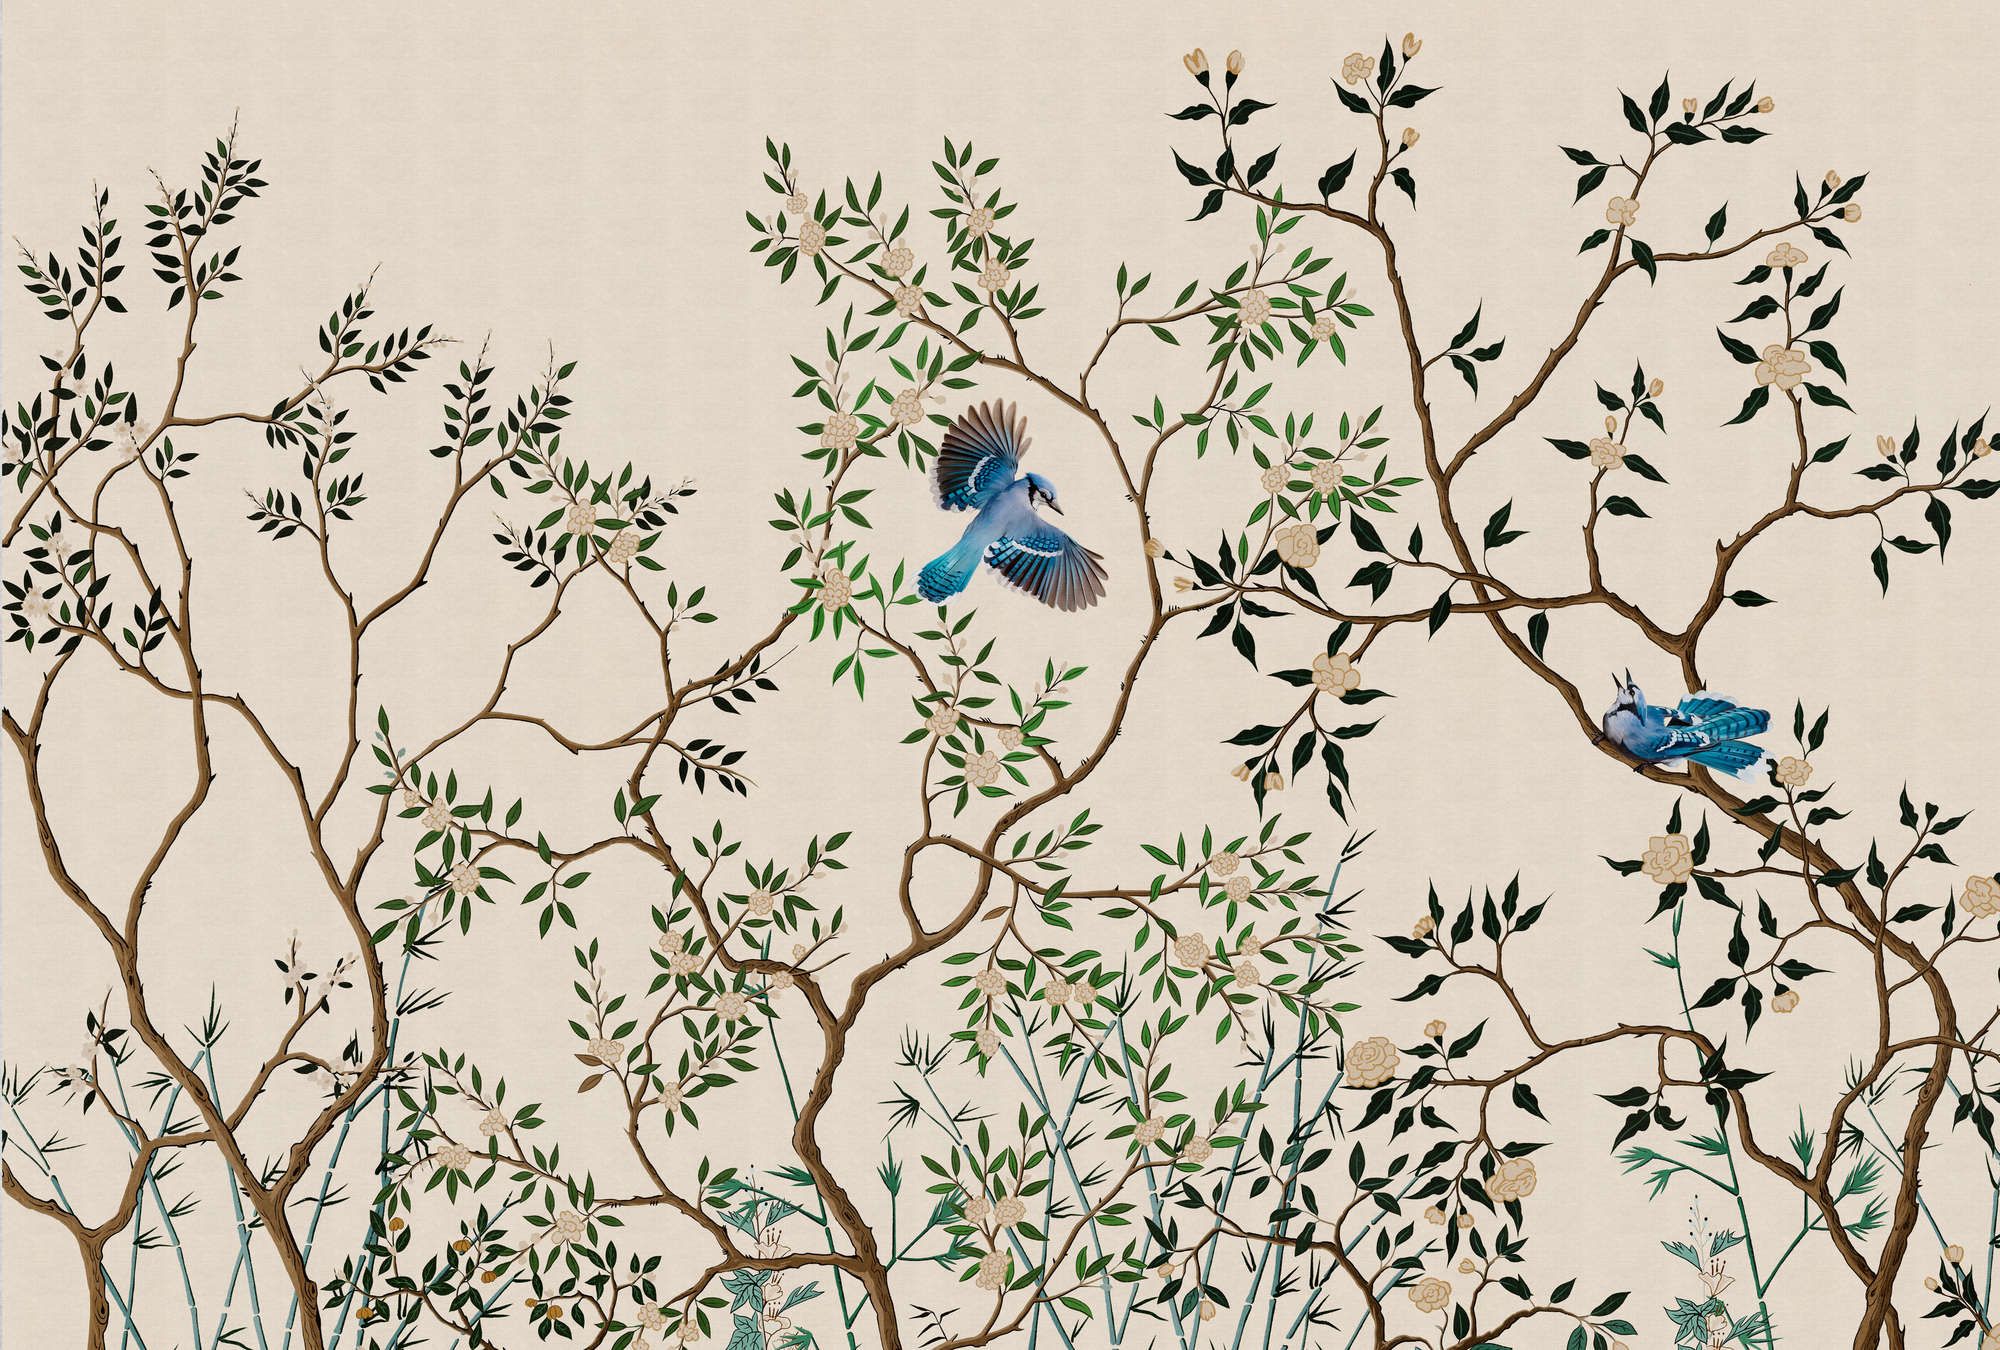             Fotomural »merula« - ramas y pájaros - claro con textura de lino | Tela no tejida de alta calidad, lisa y ligeramente brillante
        